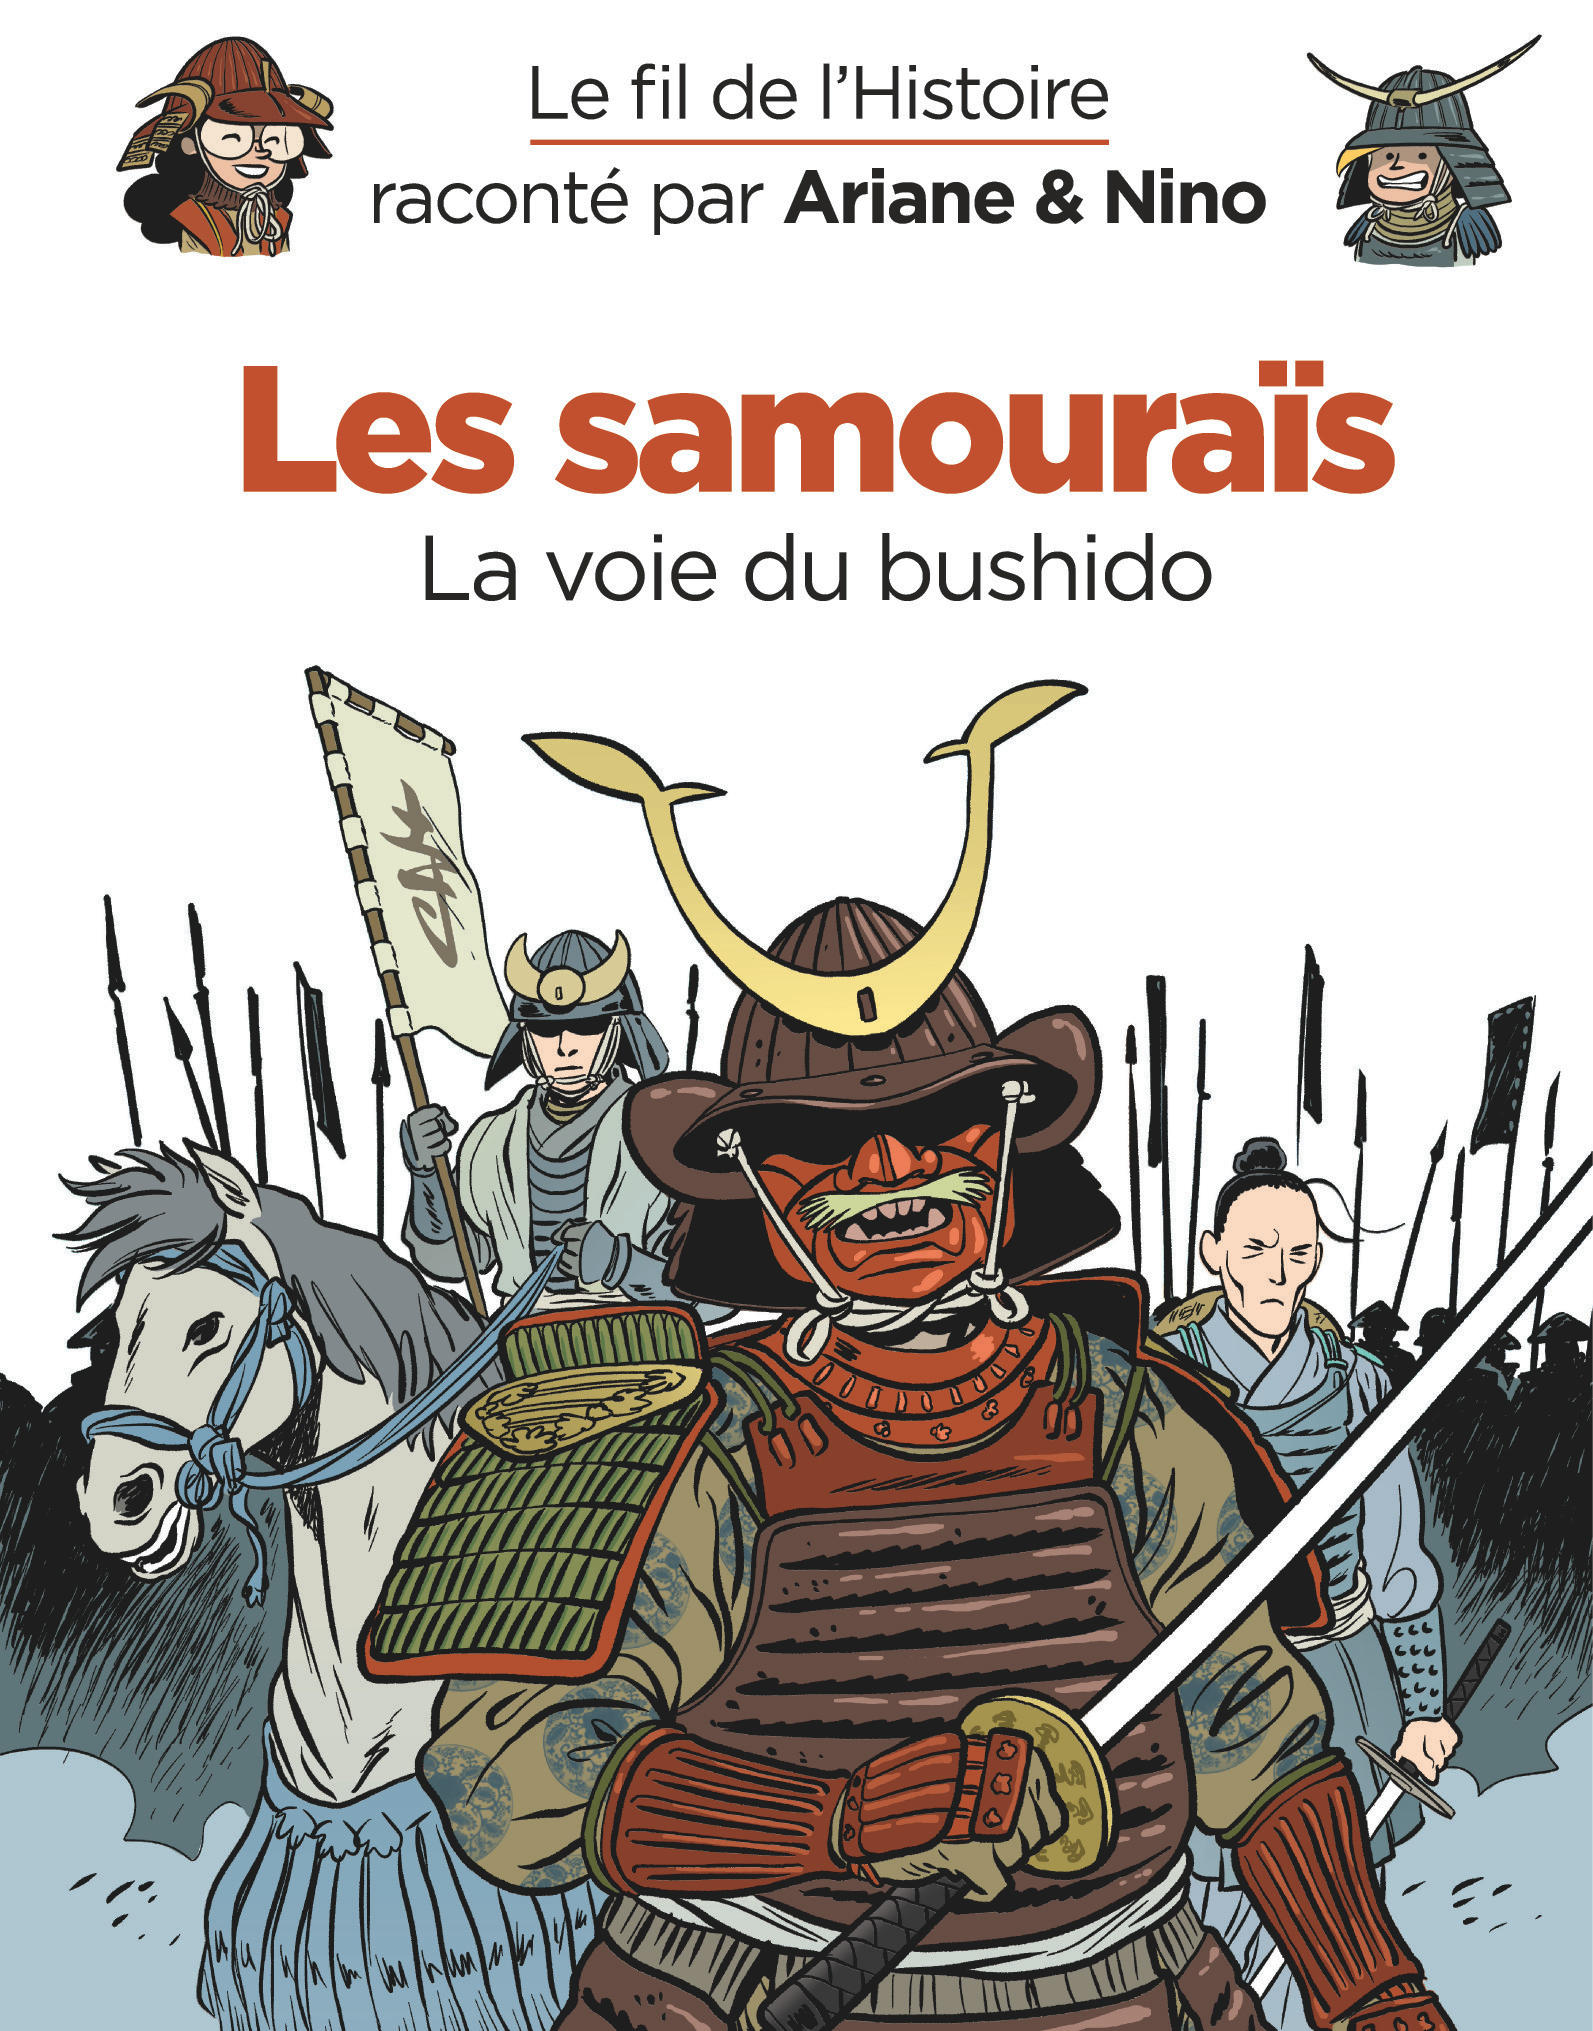 Les samouraïs, la voie du bushido dans la collection Le fil de l’Histoire racontée par Ariane et Nino.